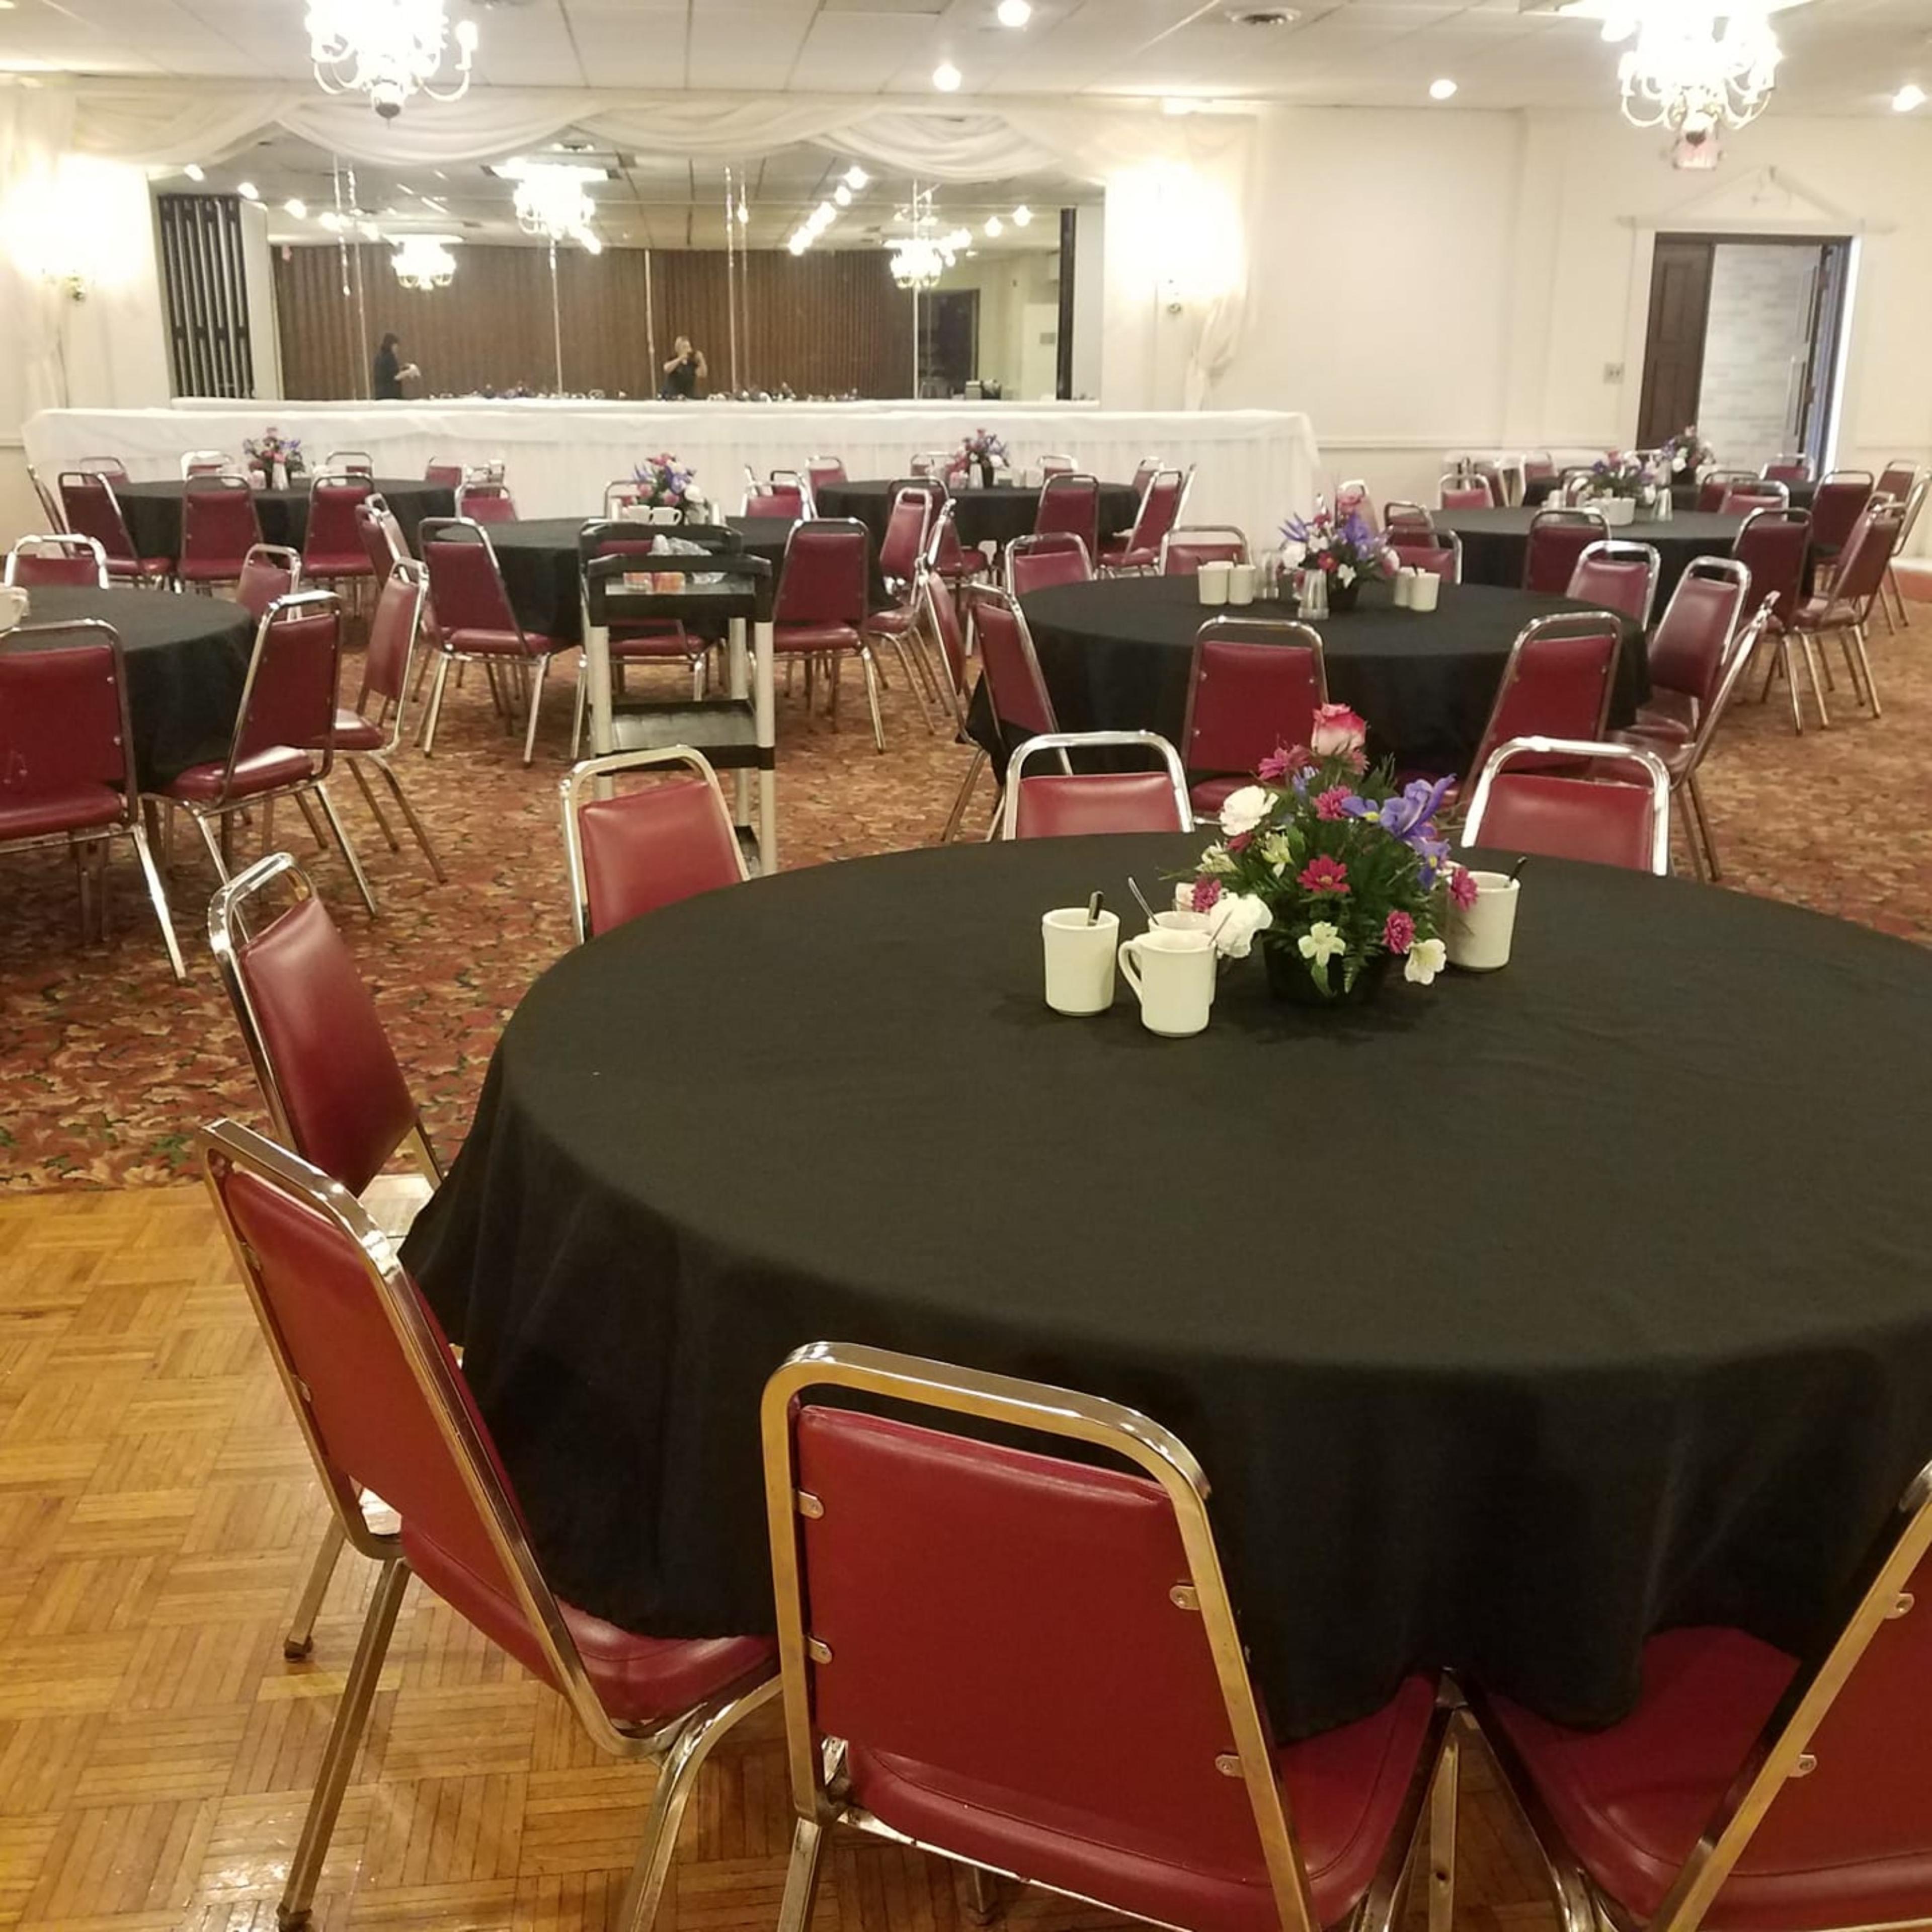 Corsi's Banquet Center